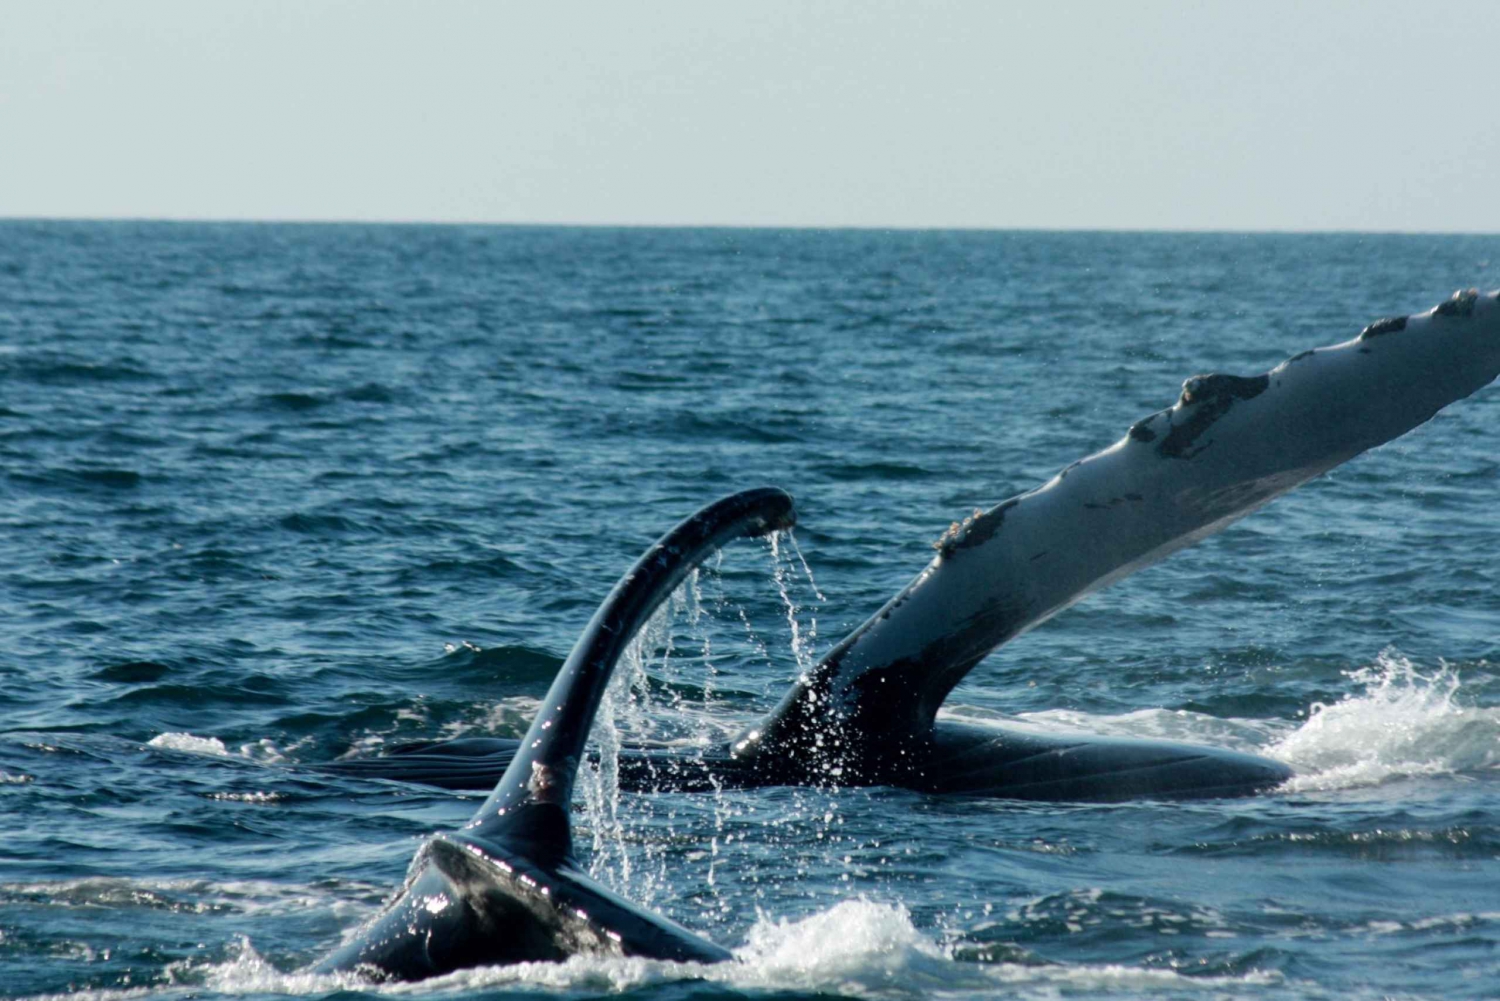 Puerto Vallarta: Whale Watching Cruise